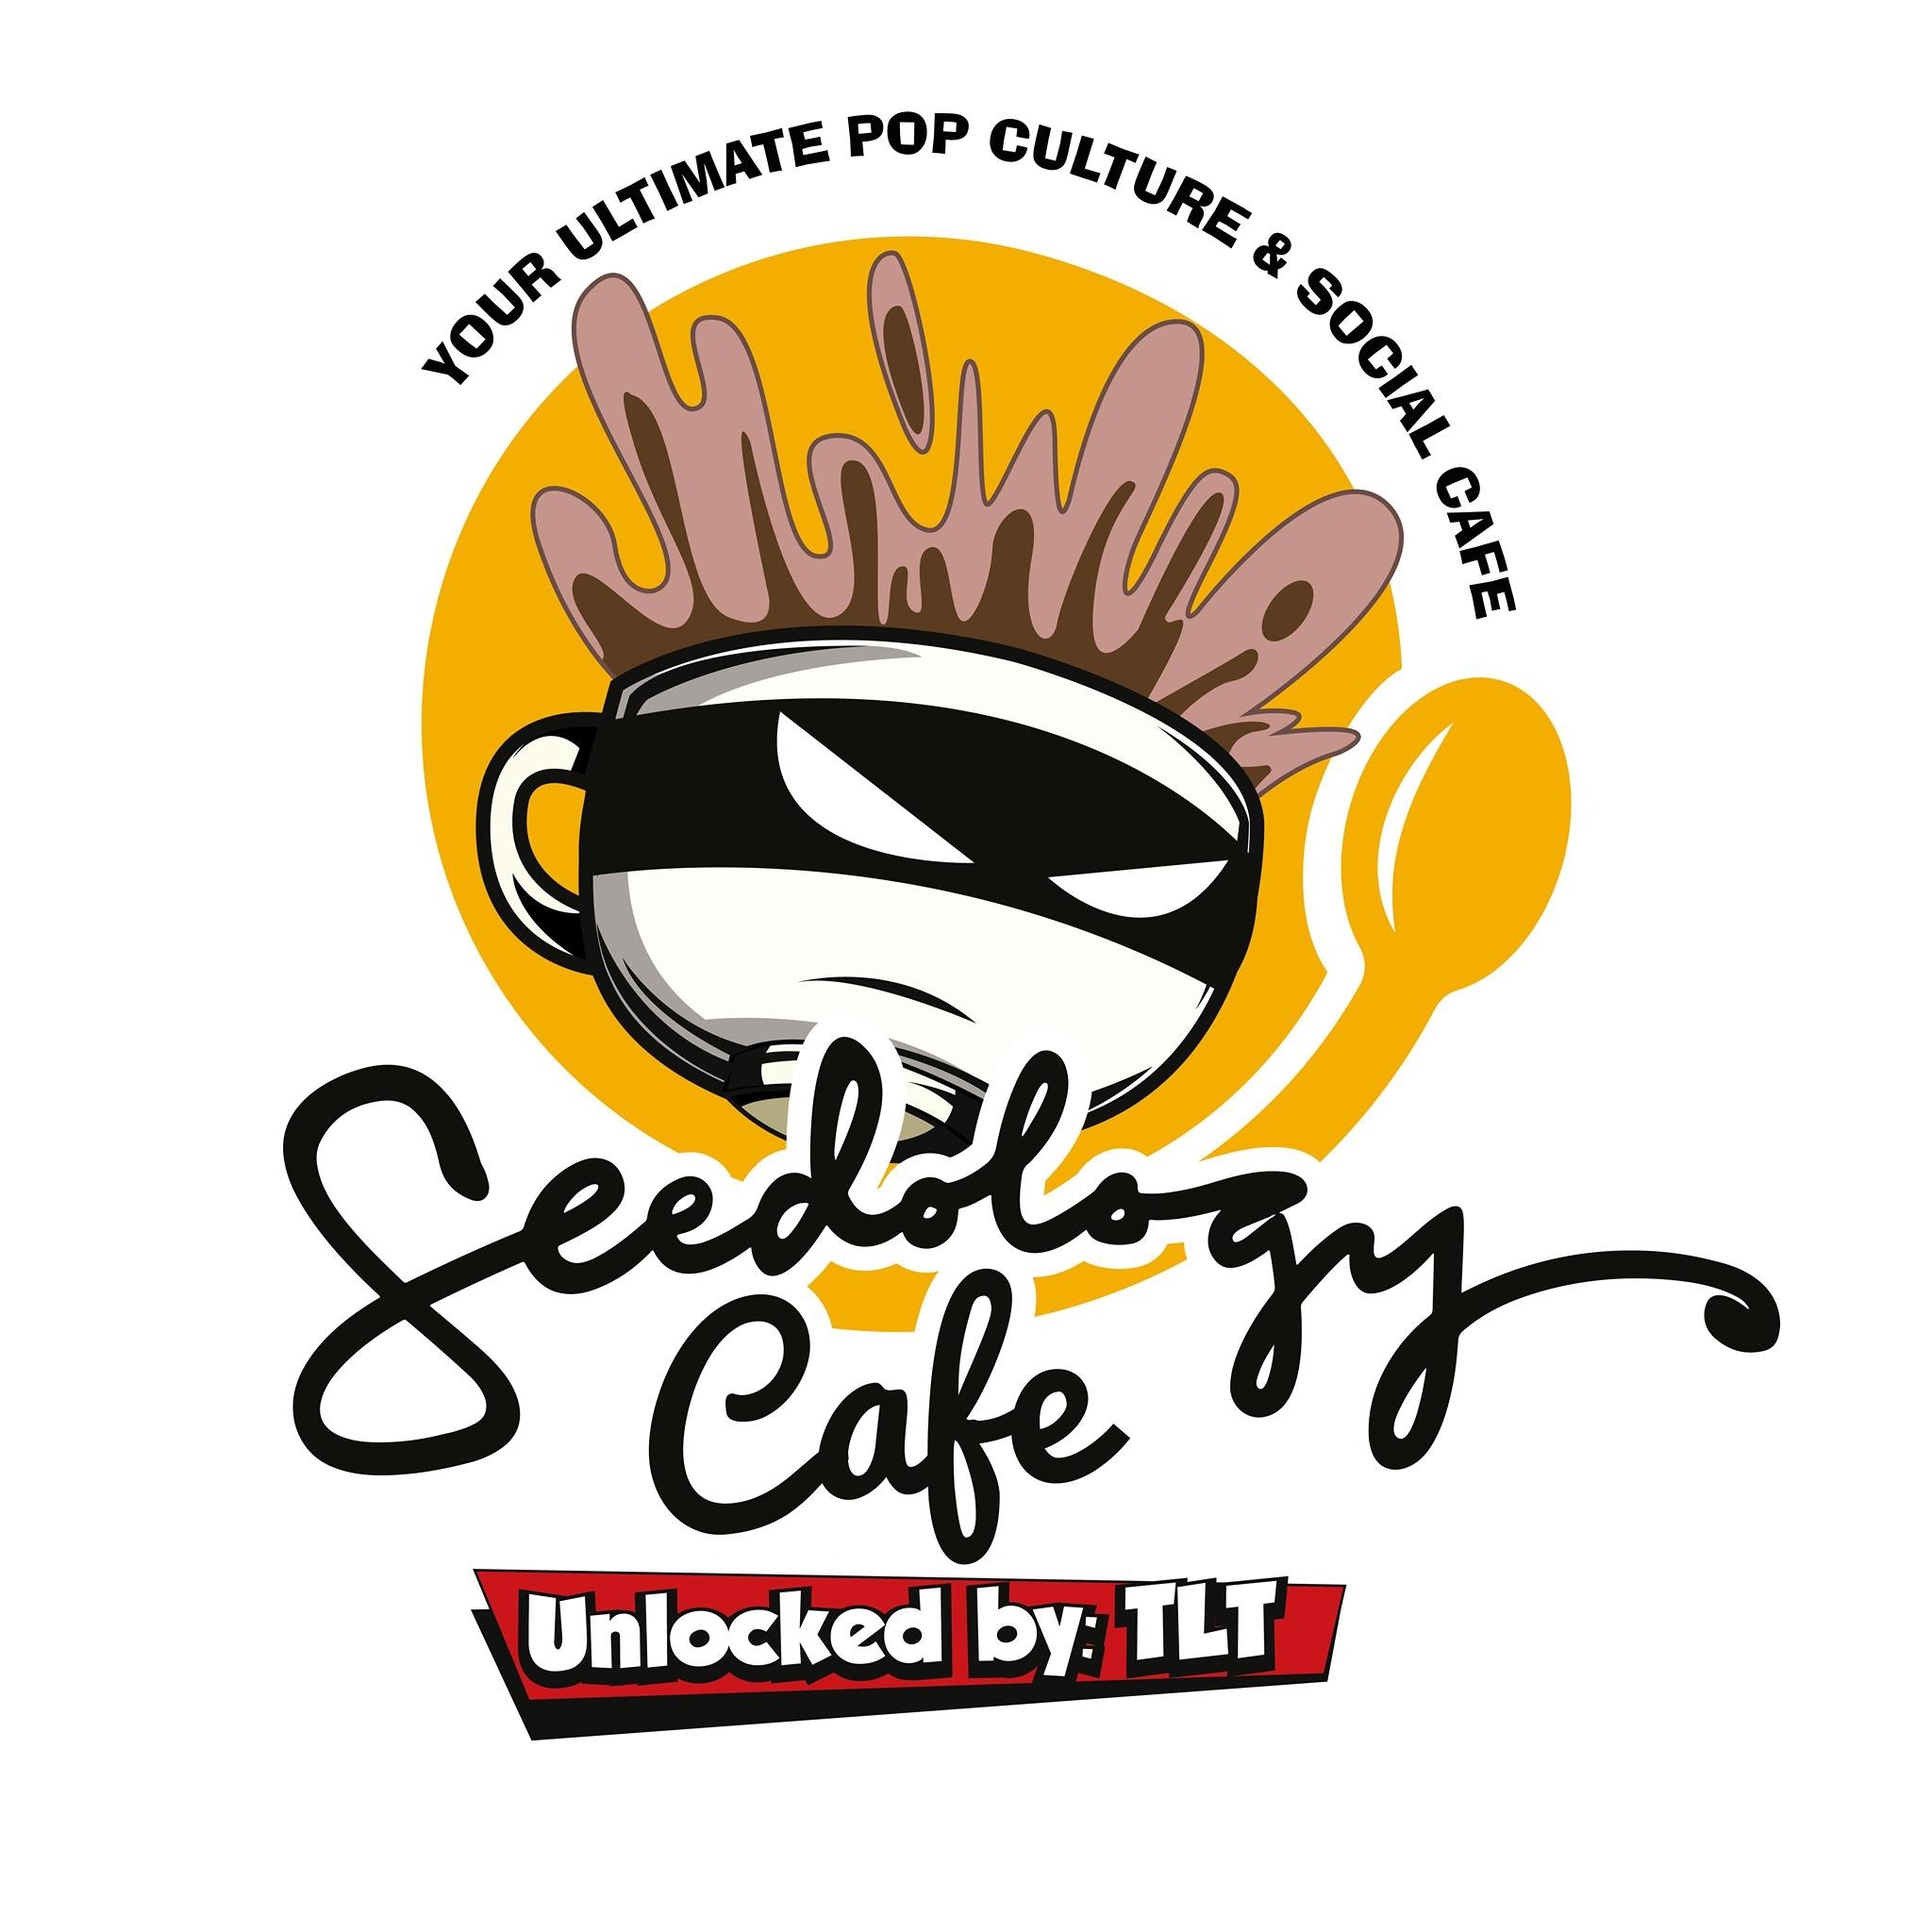 Seedology - Coming Soon in UAE